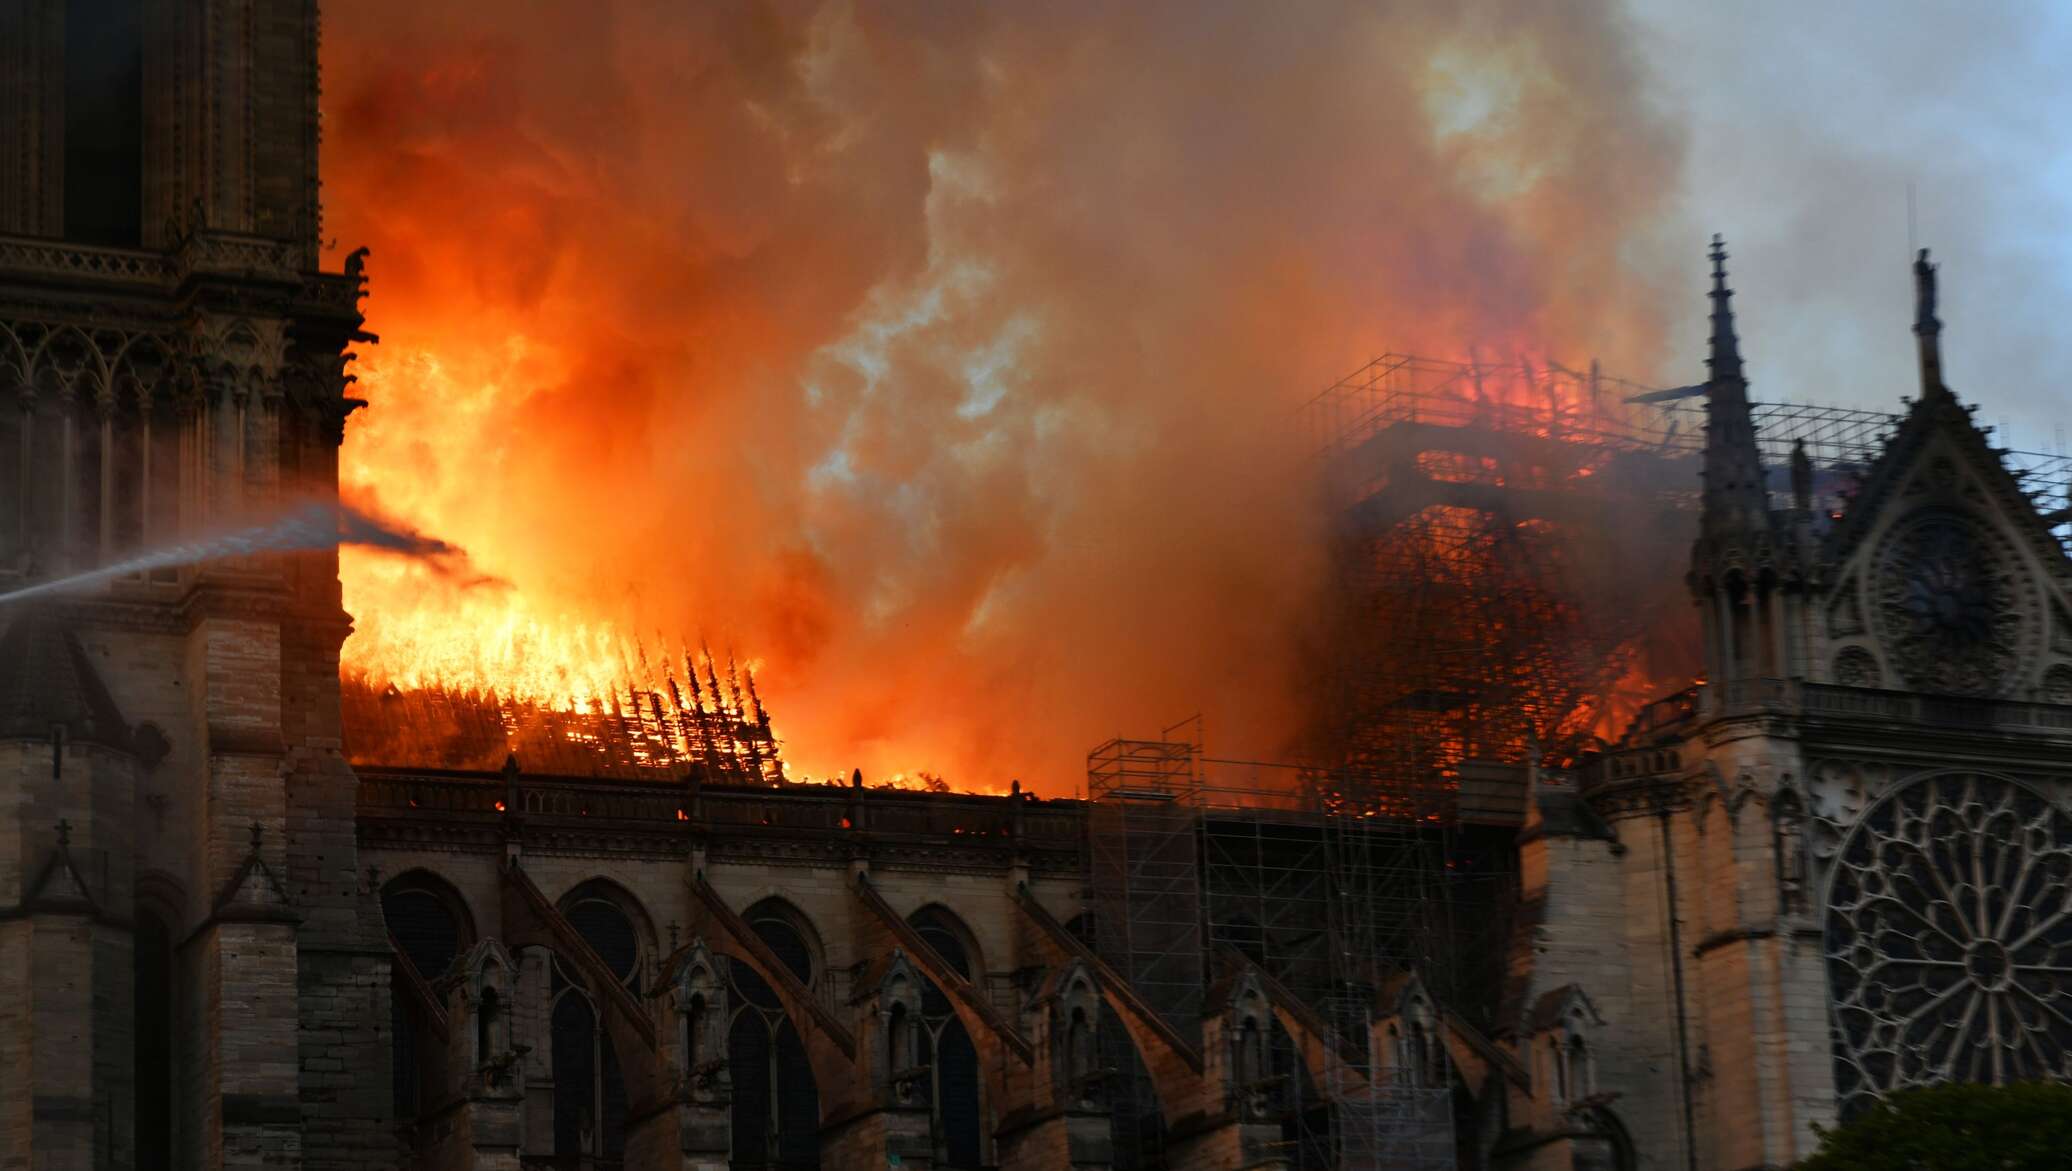 Сгорел нотр. Пожар в соборе Парижской Богоматери (2019). Нотердам де пари пожар.